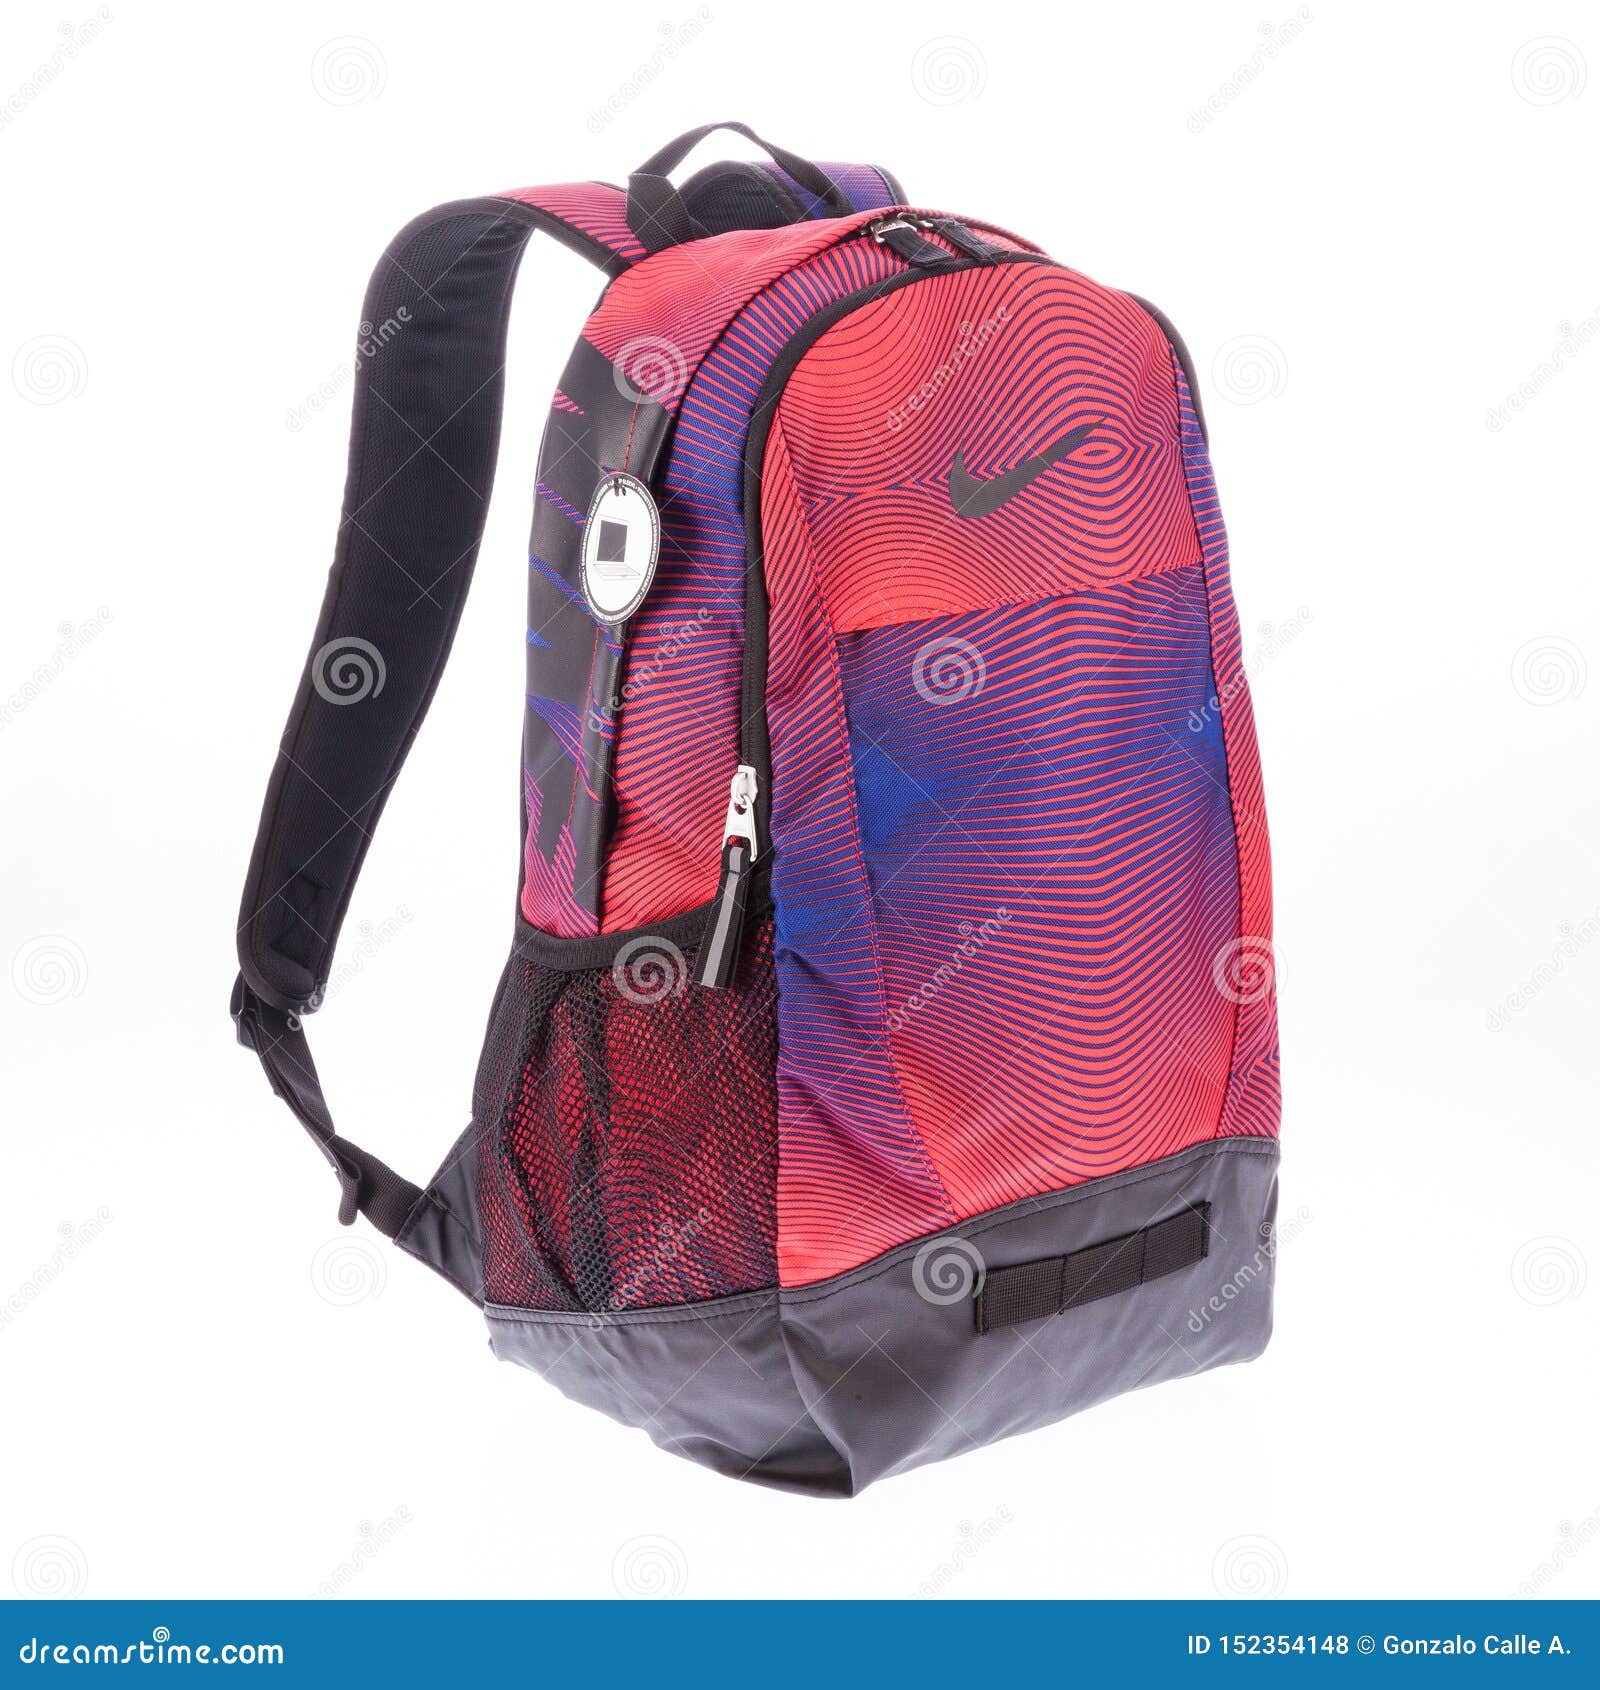 nike backpack 2019